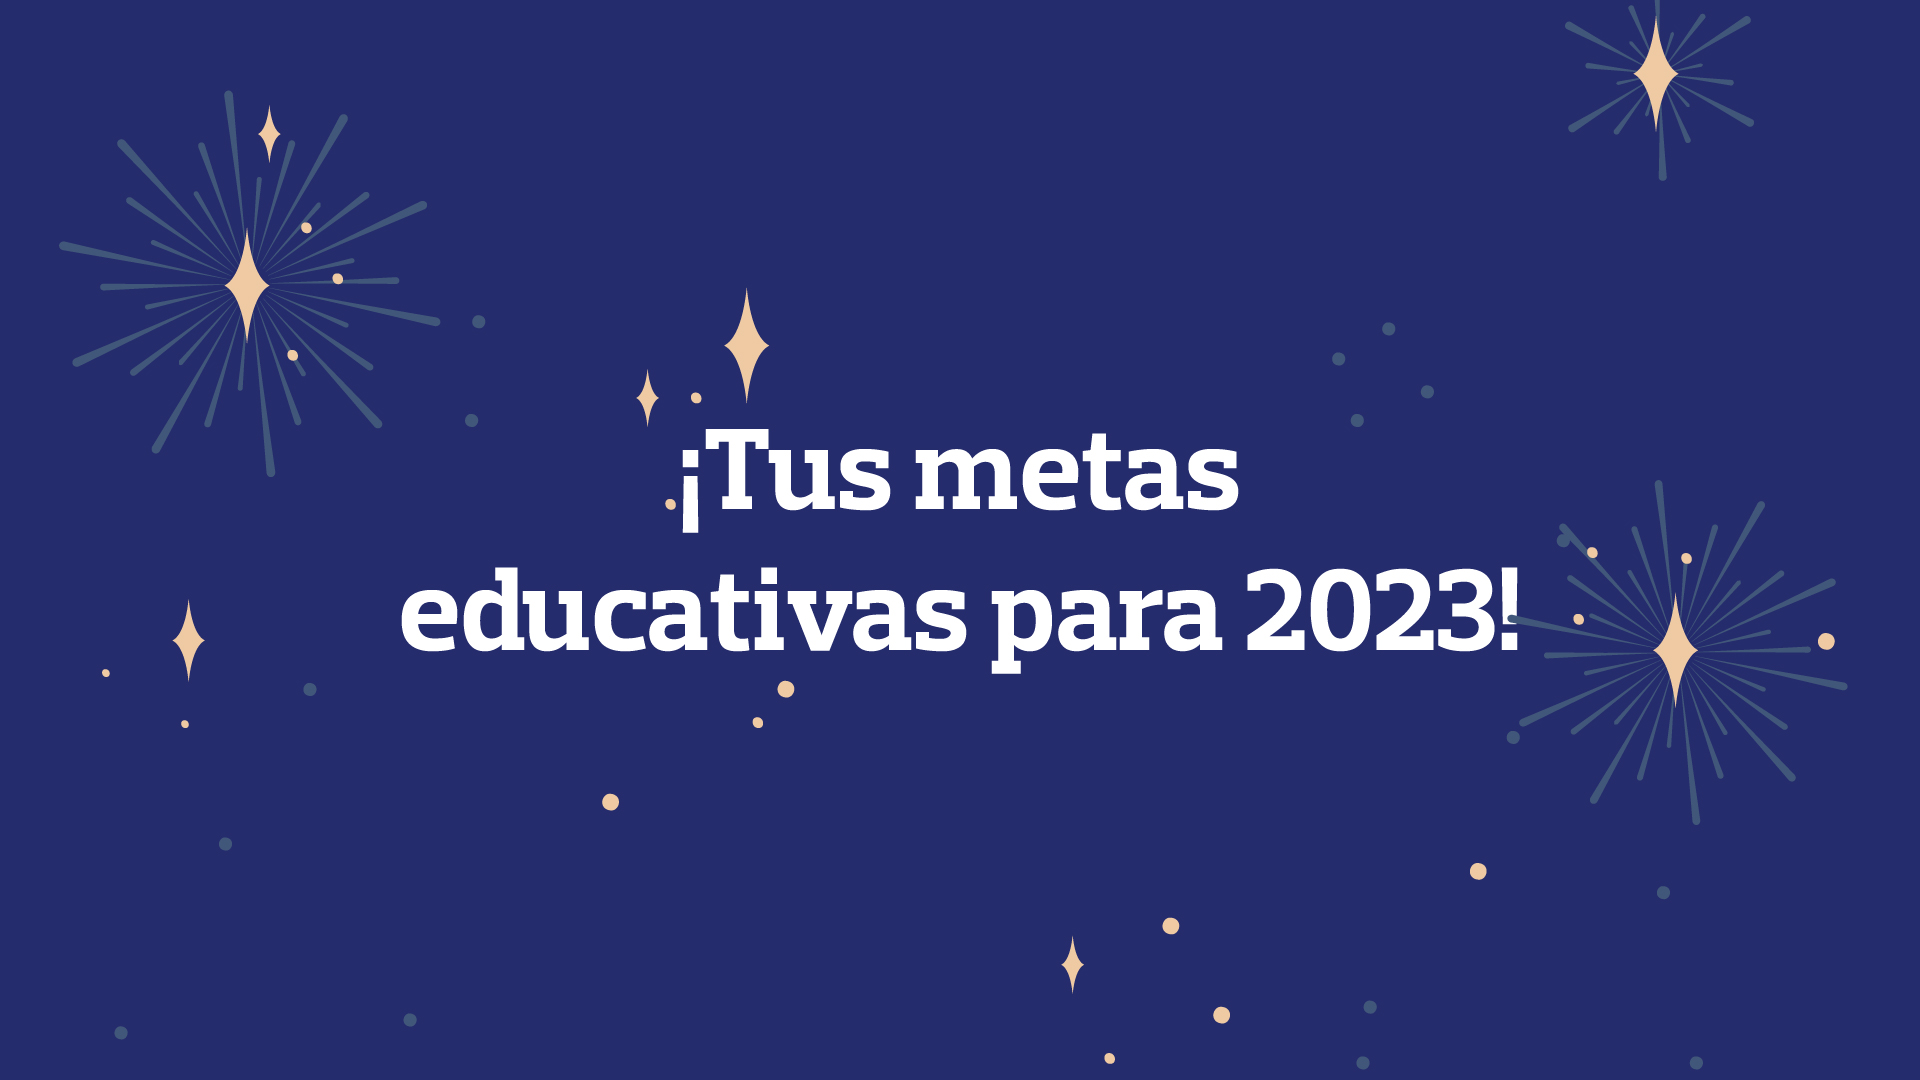 tus metas educativas para 2023